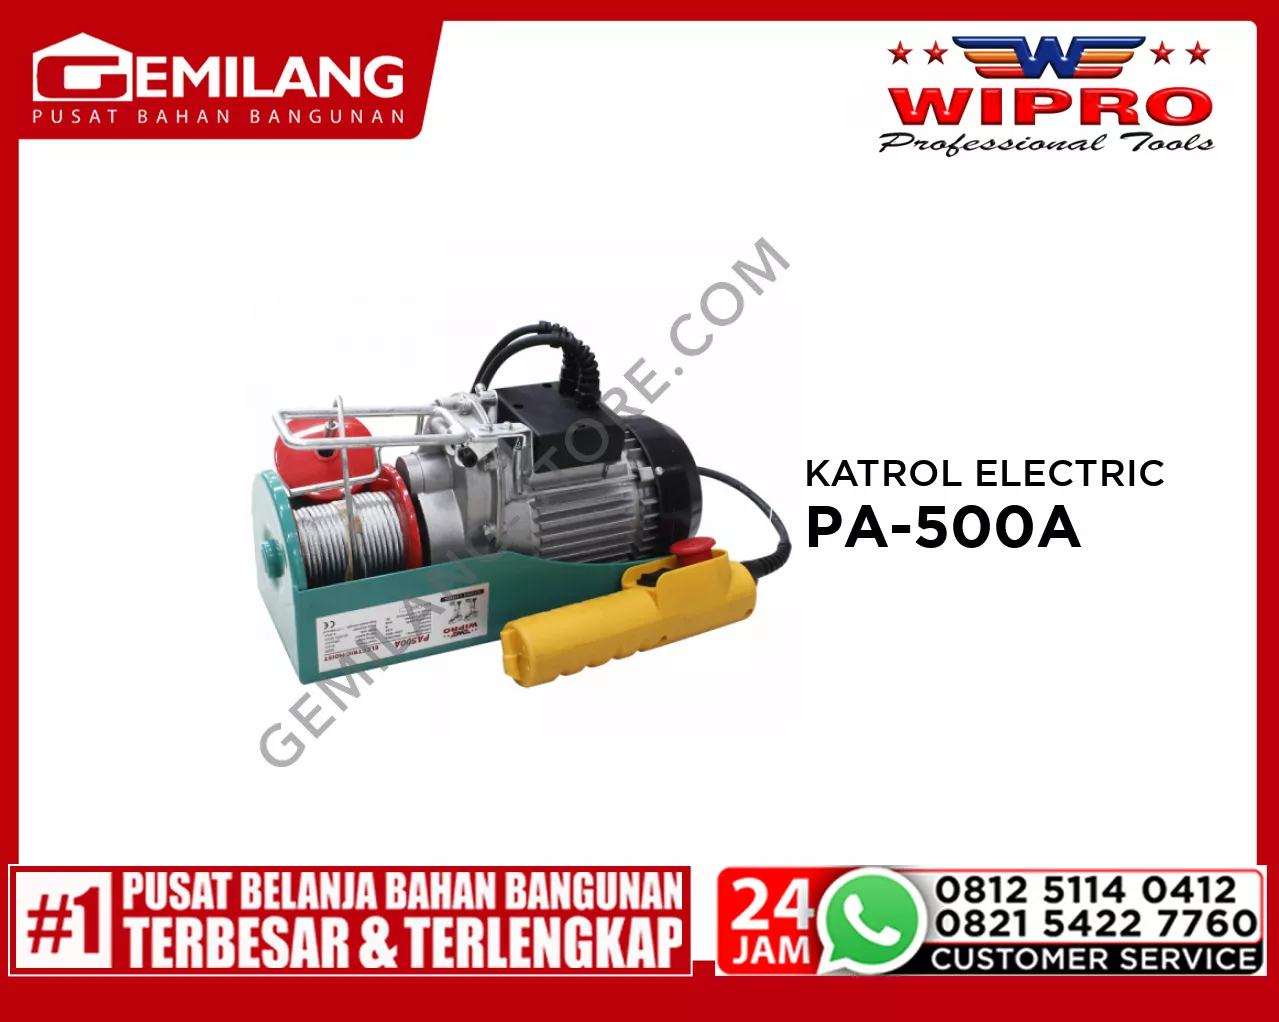 WIPRO KATROL ELECTRIC PA-500A